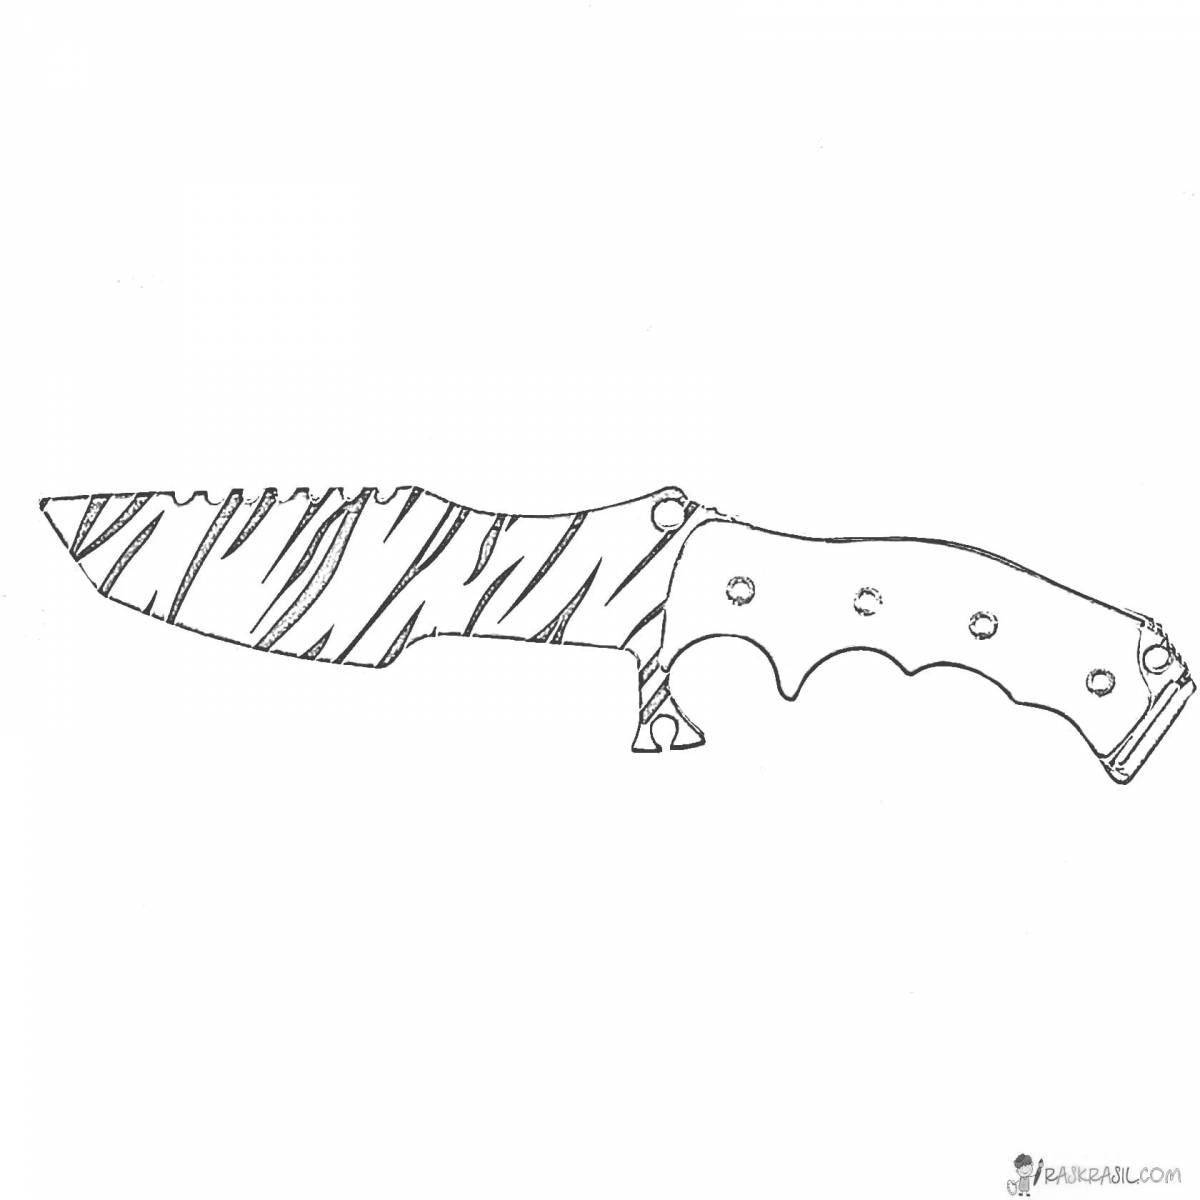 Стильная раскраска подставки для ножей